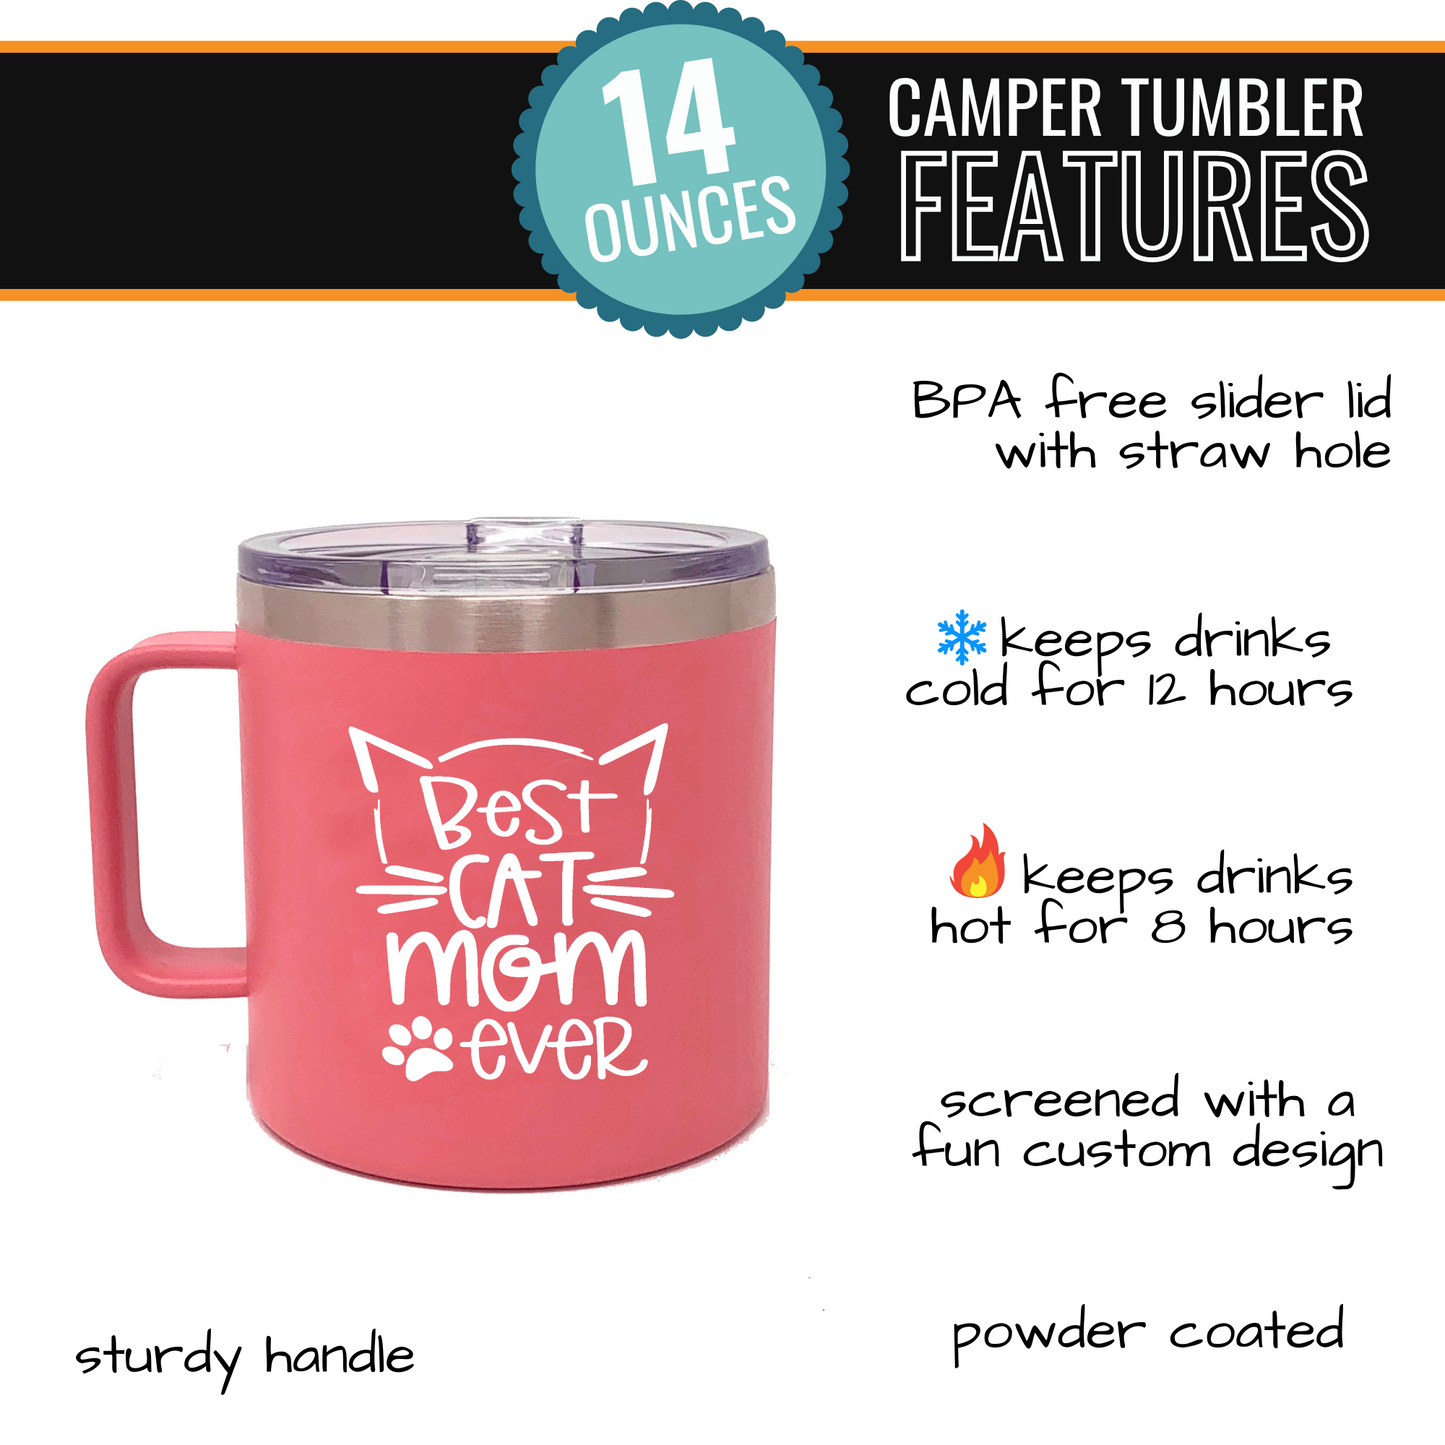 Best Cat Mom Ever 14 oz Coral Camper Tumbler for Cat Lovers - Outlet Deal Utah